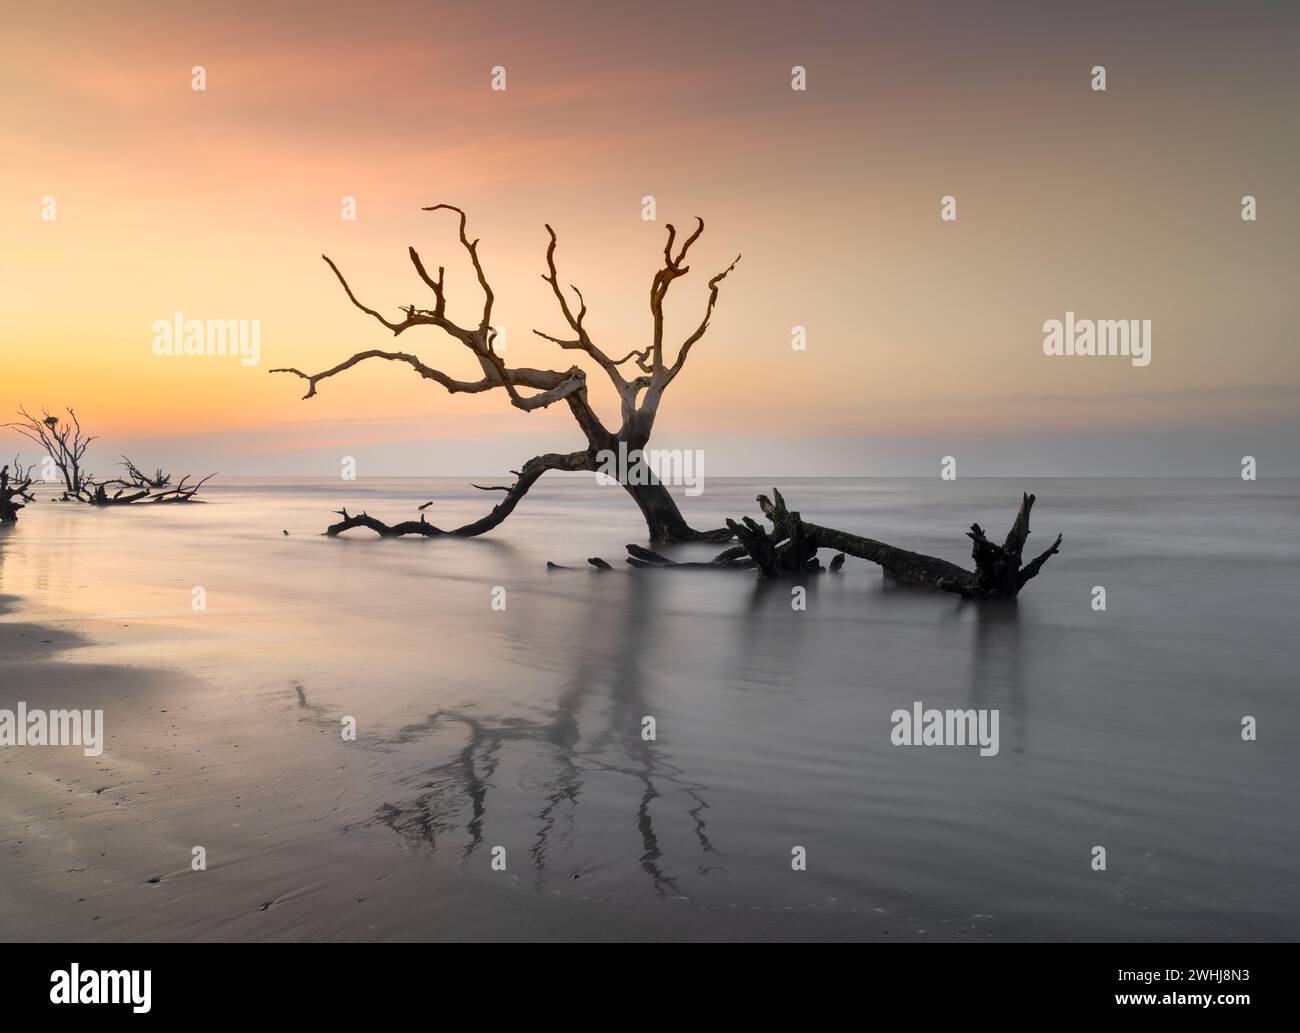 Paesaggio marino meditativo con albero morto e palude al sorgere del sole Foto Stock